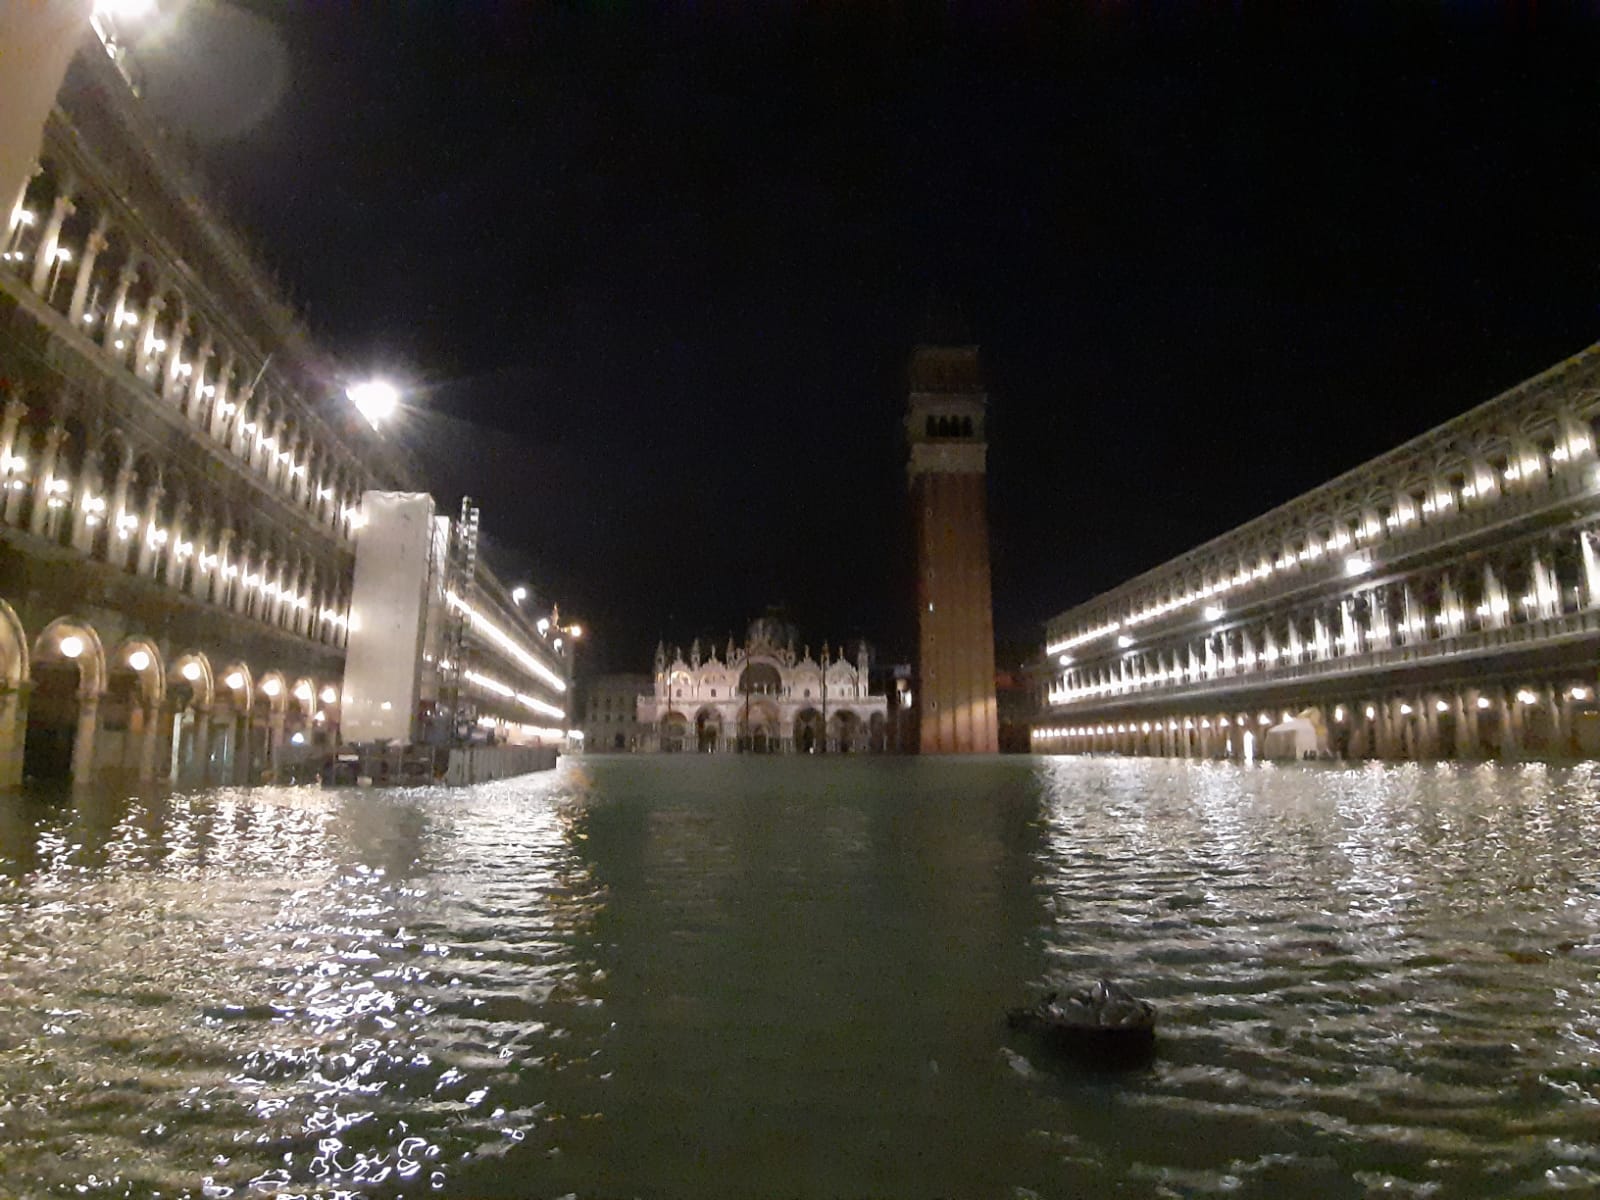 Venezia, alla Basilica di San Marco pesanti danni strutturali. Il patriarca: “auspico attenzione del governo”